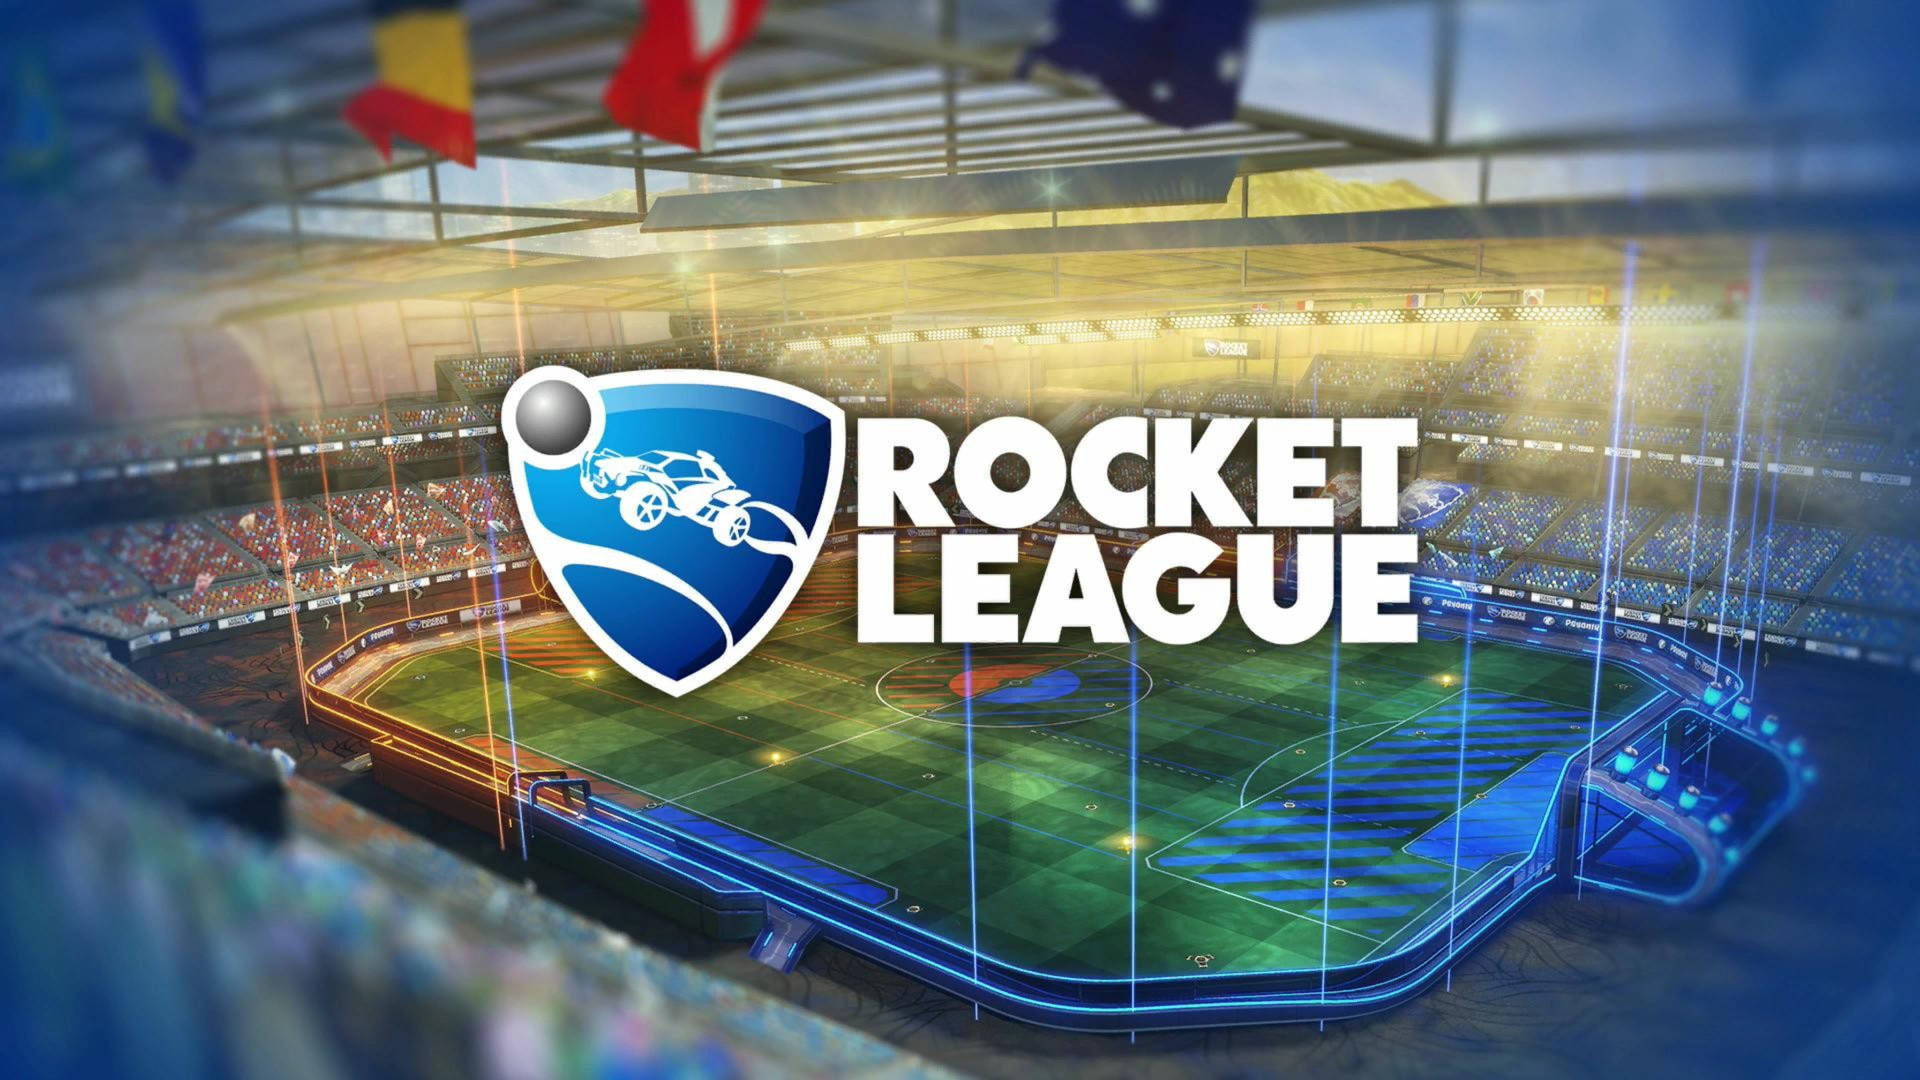 Rocket League Hd Logo On Field Wallpaper